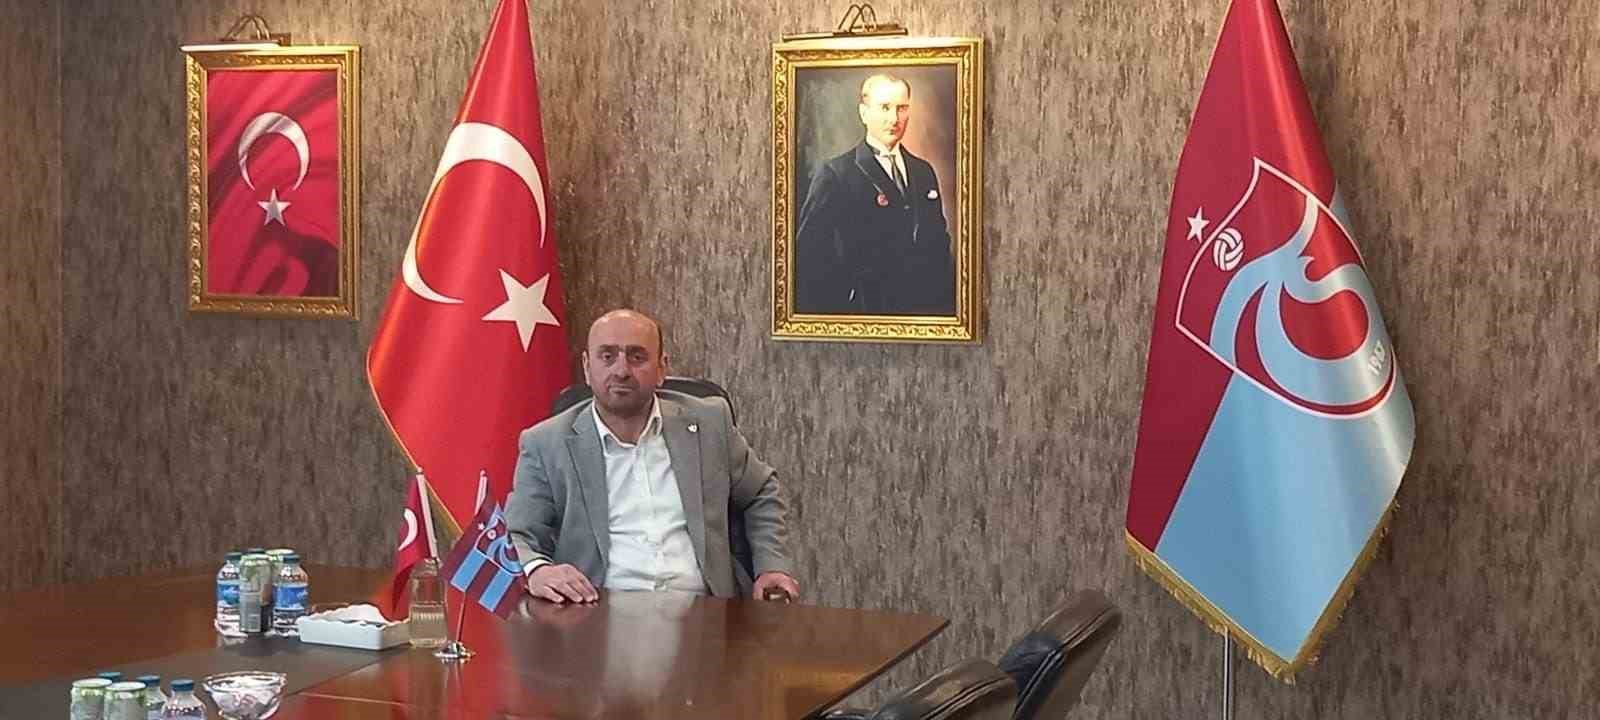 Trabzon’da Eski Yönetici İbrahim Tüfekçi’nin Ofisine Kurşun Yağdı